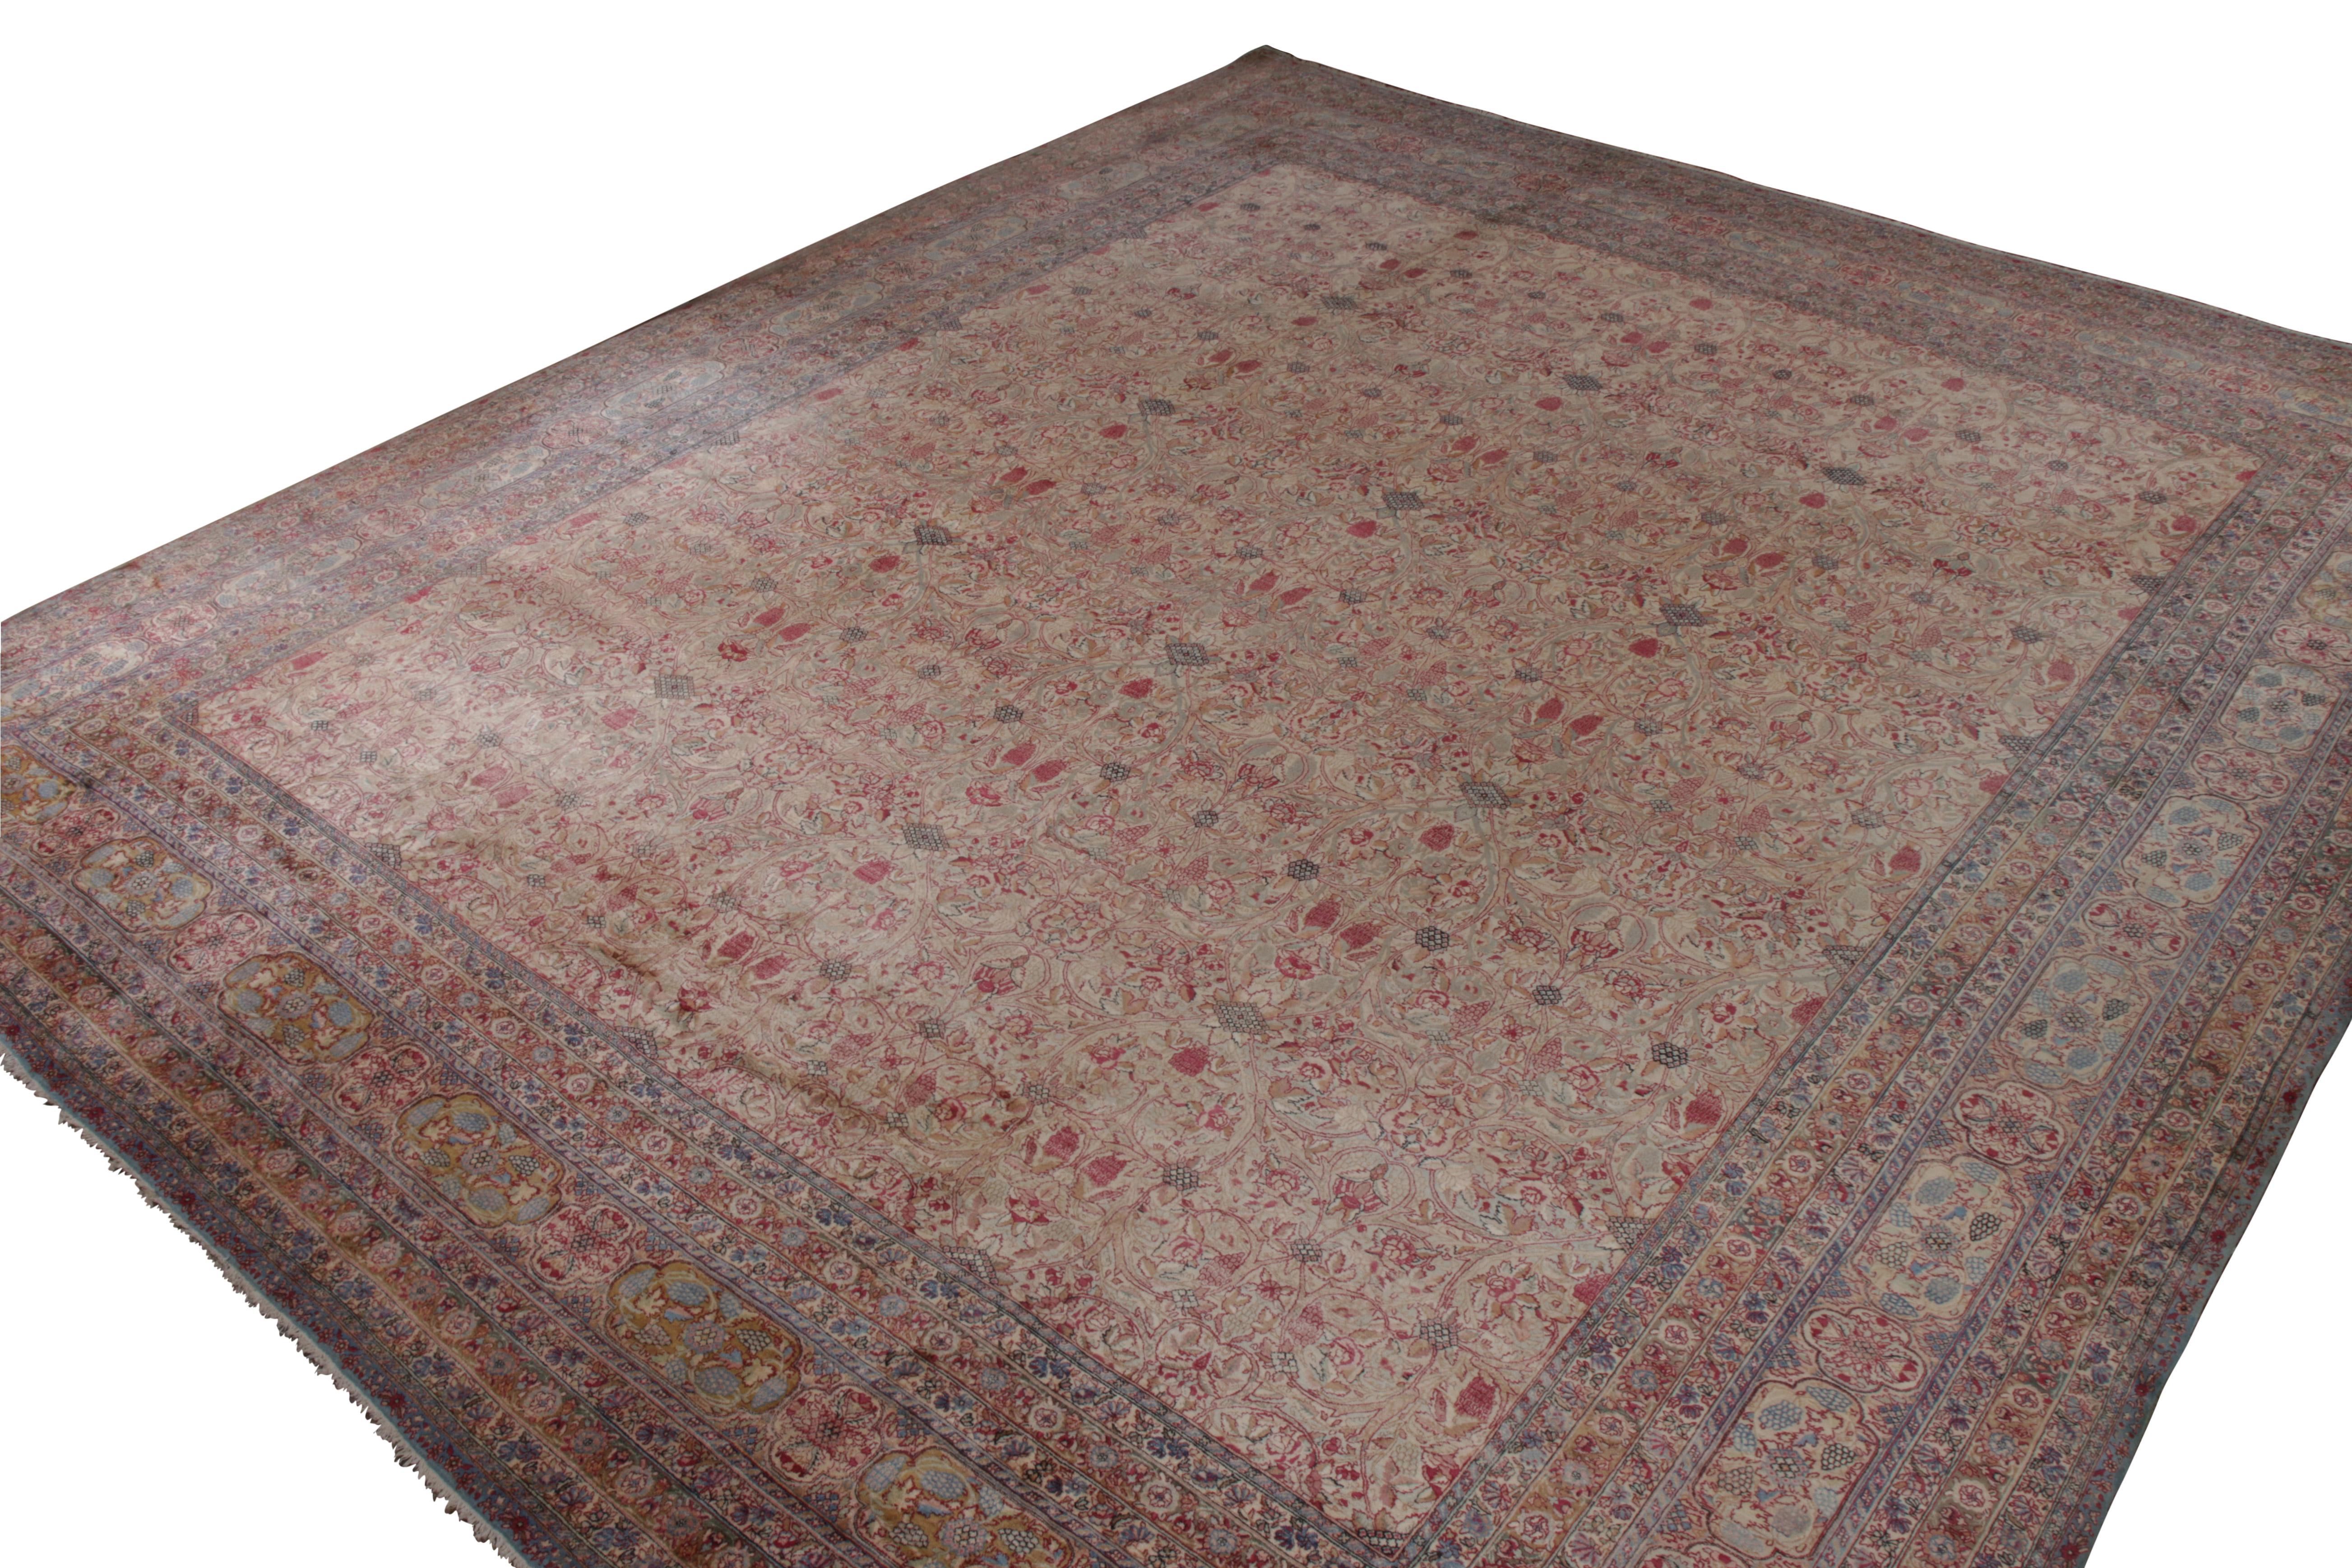 Ein 16x19 antiker persischer Teppich mit Kerman Design in Beige und Rot, handgeknüpft in Wolle aus der Zeit um 1900-1910. Eine fantastische Auswahl an antiken Kerman Teppichen in dieser seltenen Größe, Feinheit und majestätischen